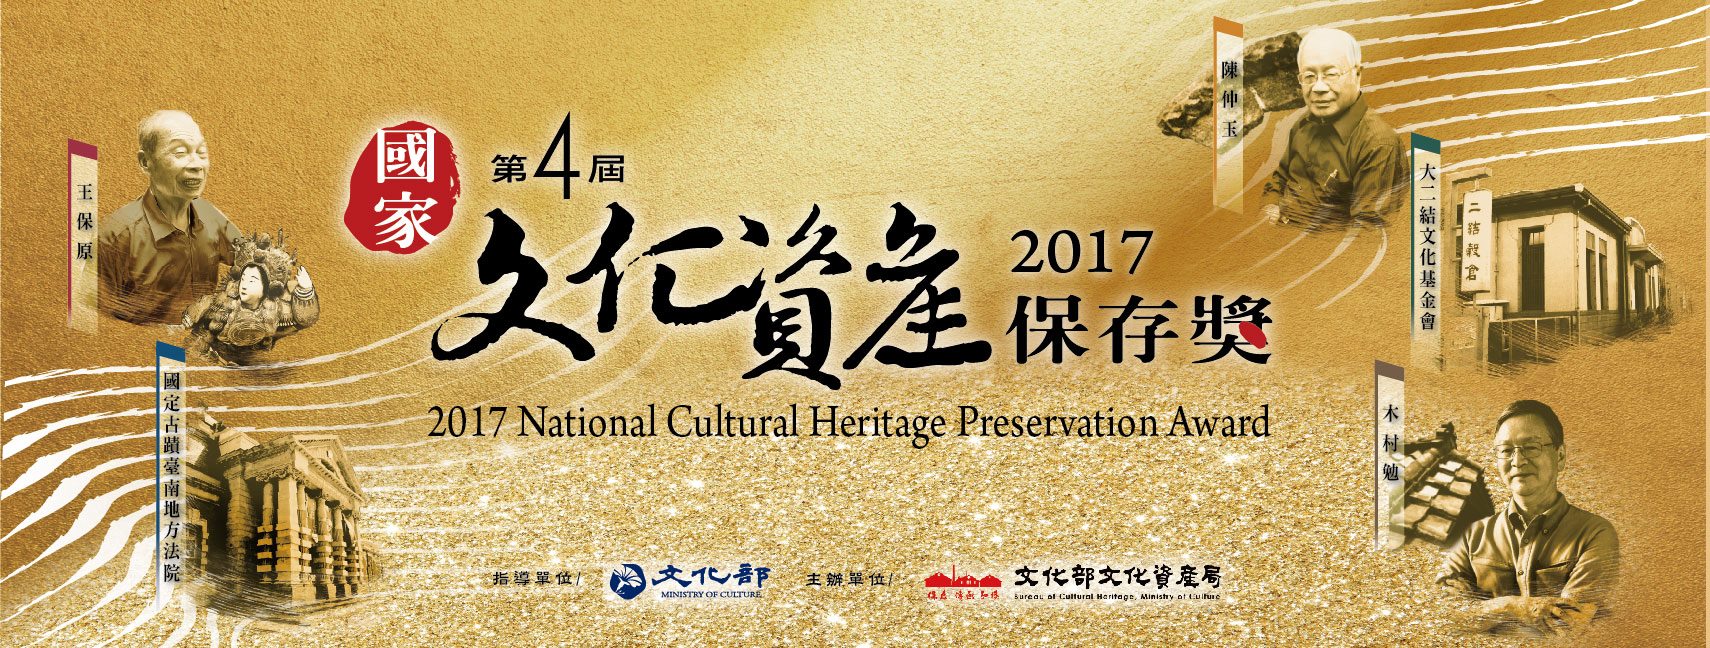 National Cultural Heritage Preservation Awards